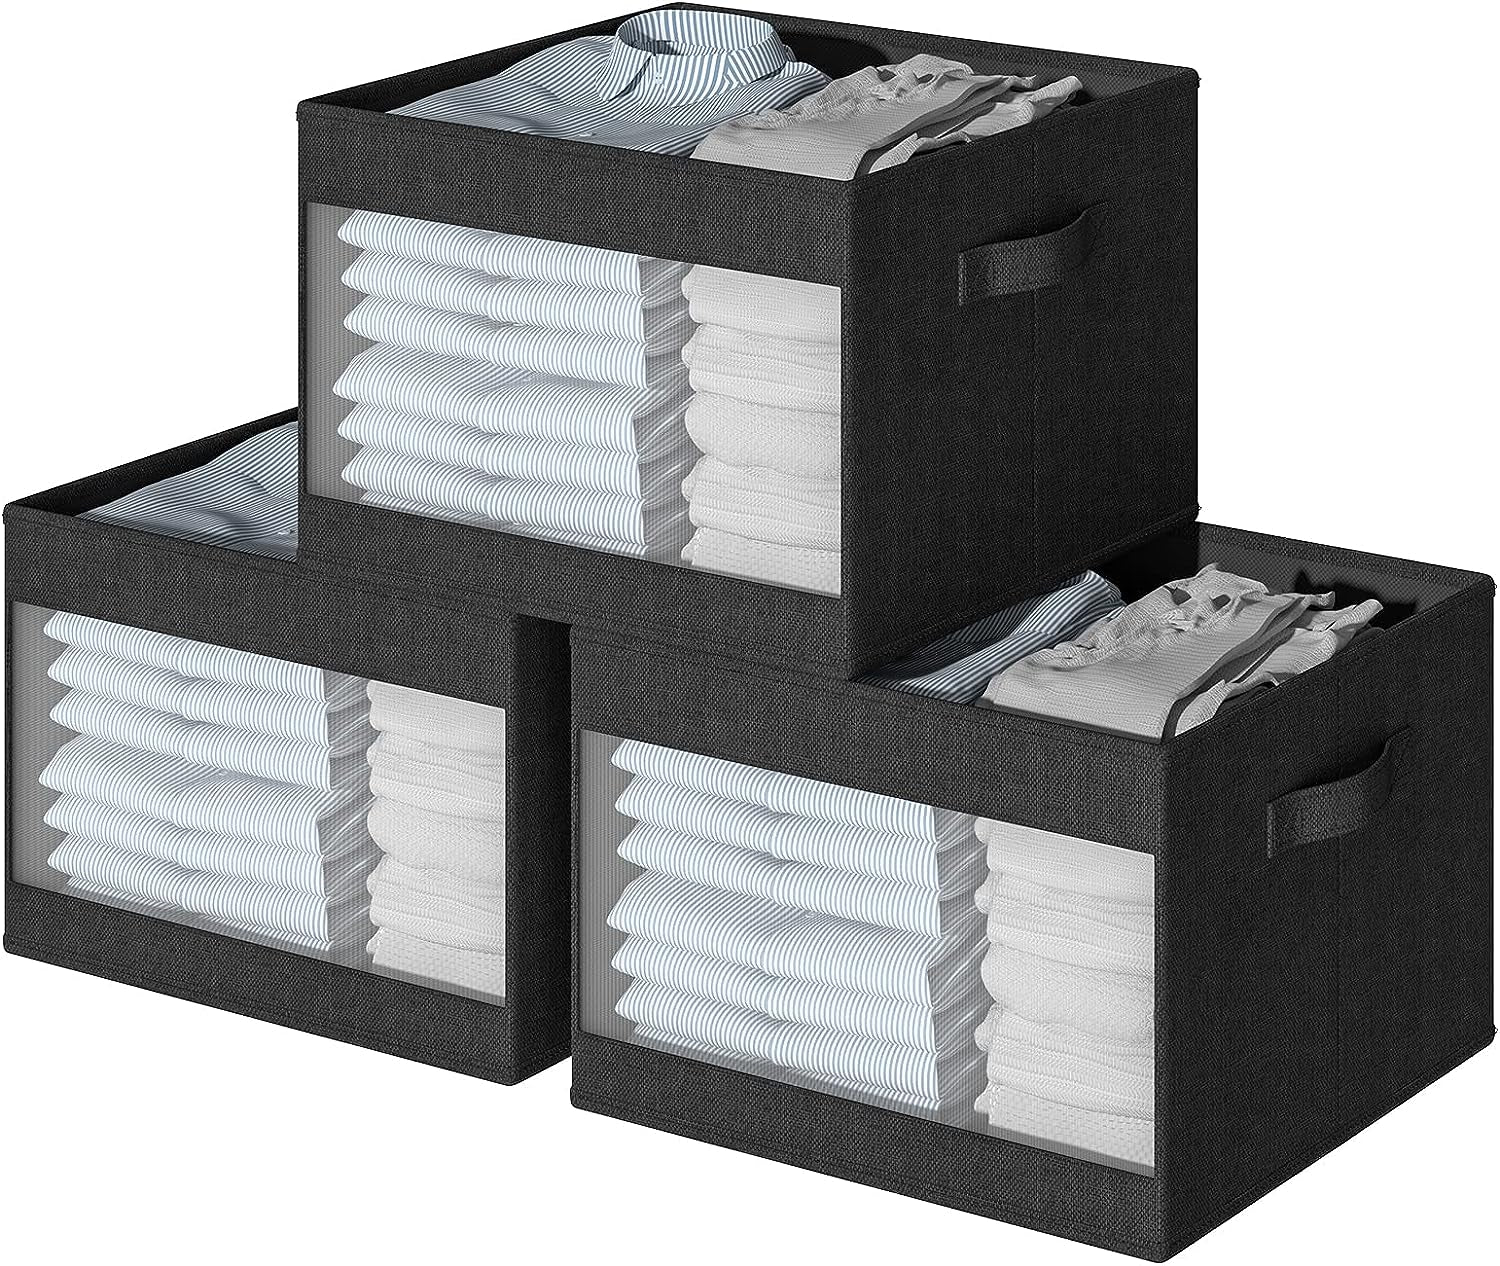 Blushbees® Clear Window Closet Storage Bins - 3 Pack (Beige)